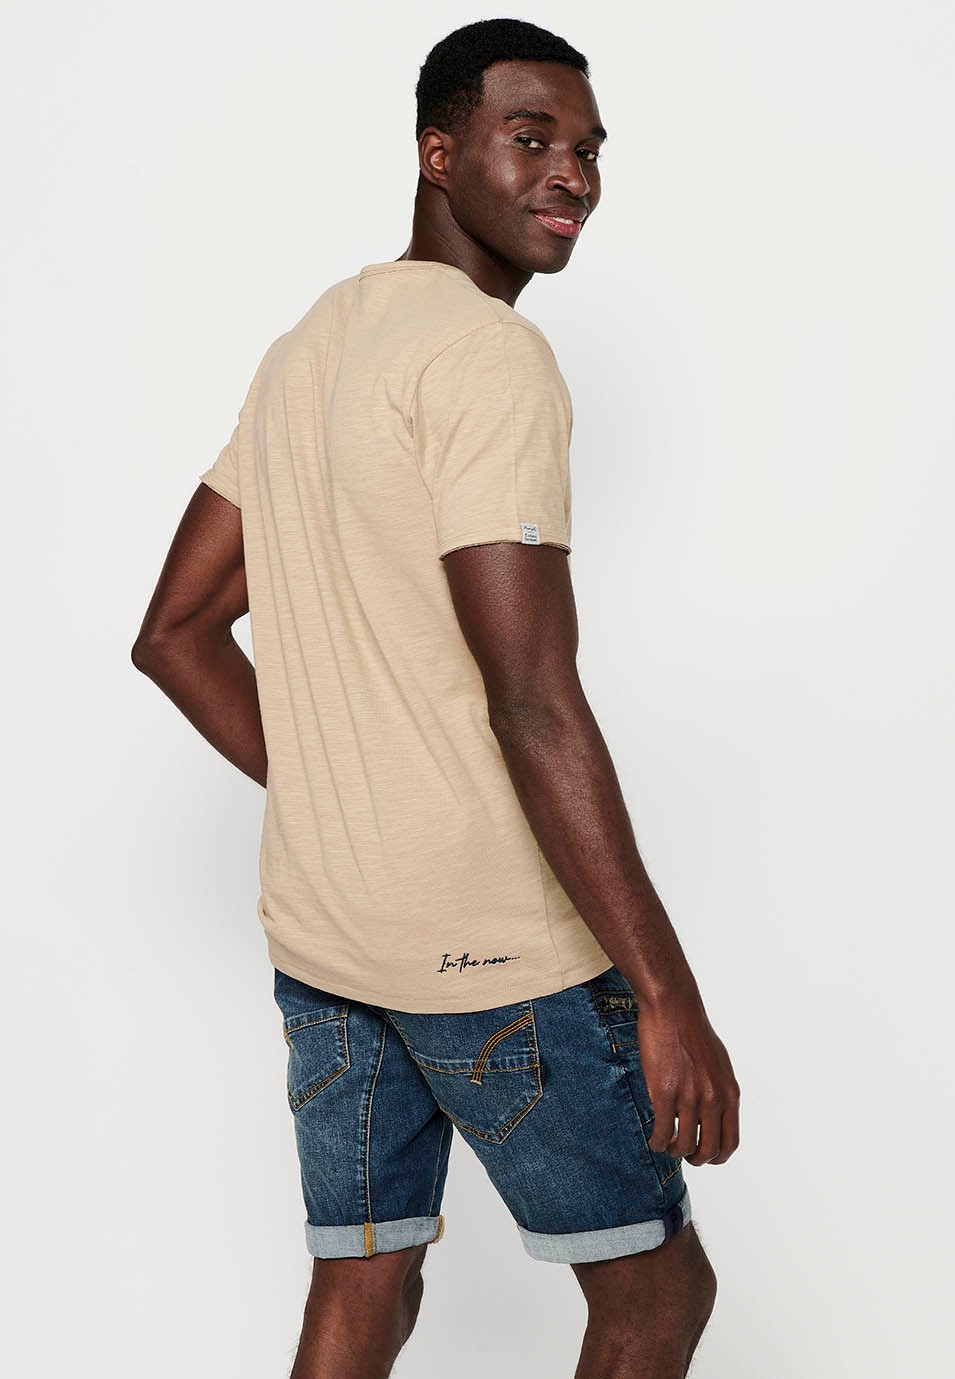 Camiseta básica de manga corta, cuello V con boton, color beige para hombre